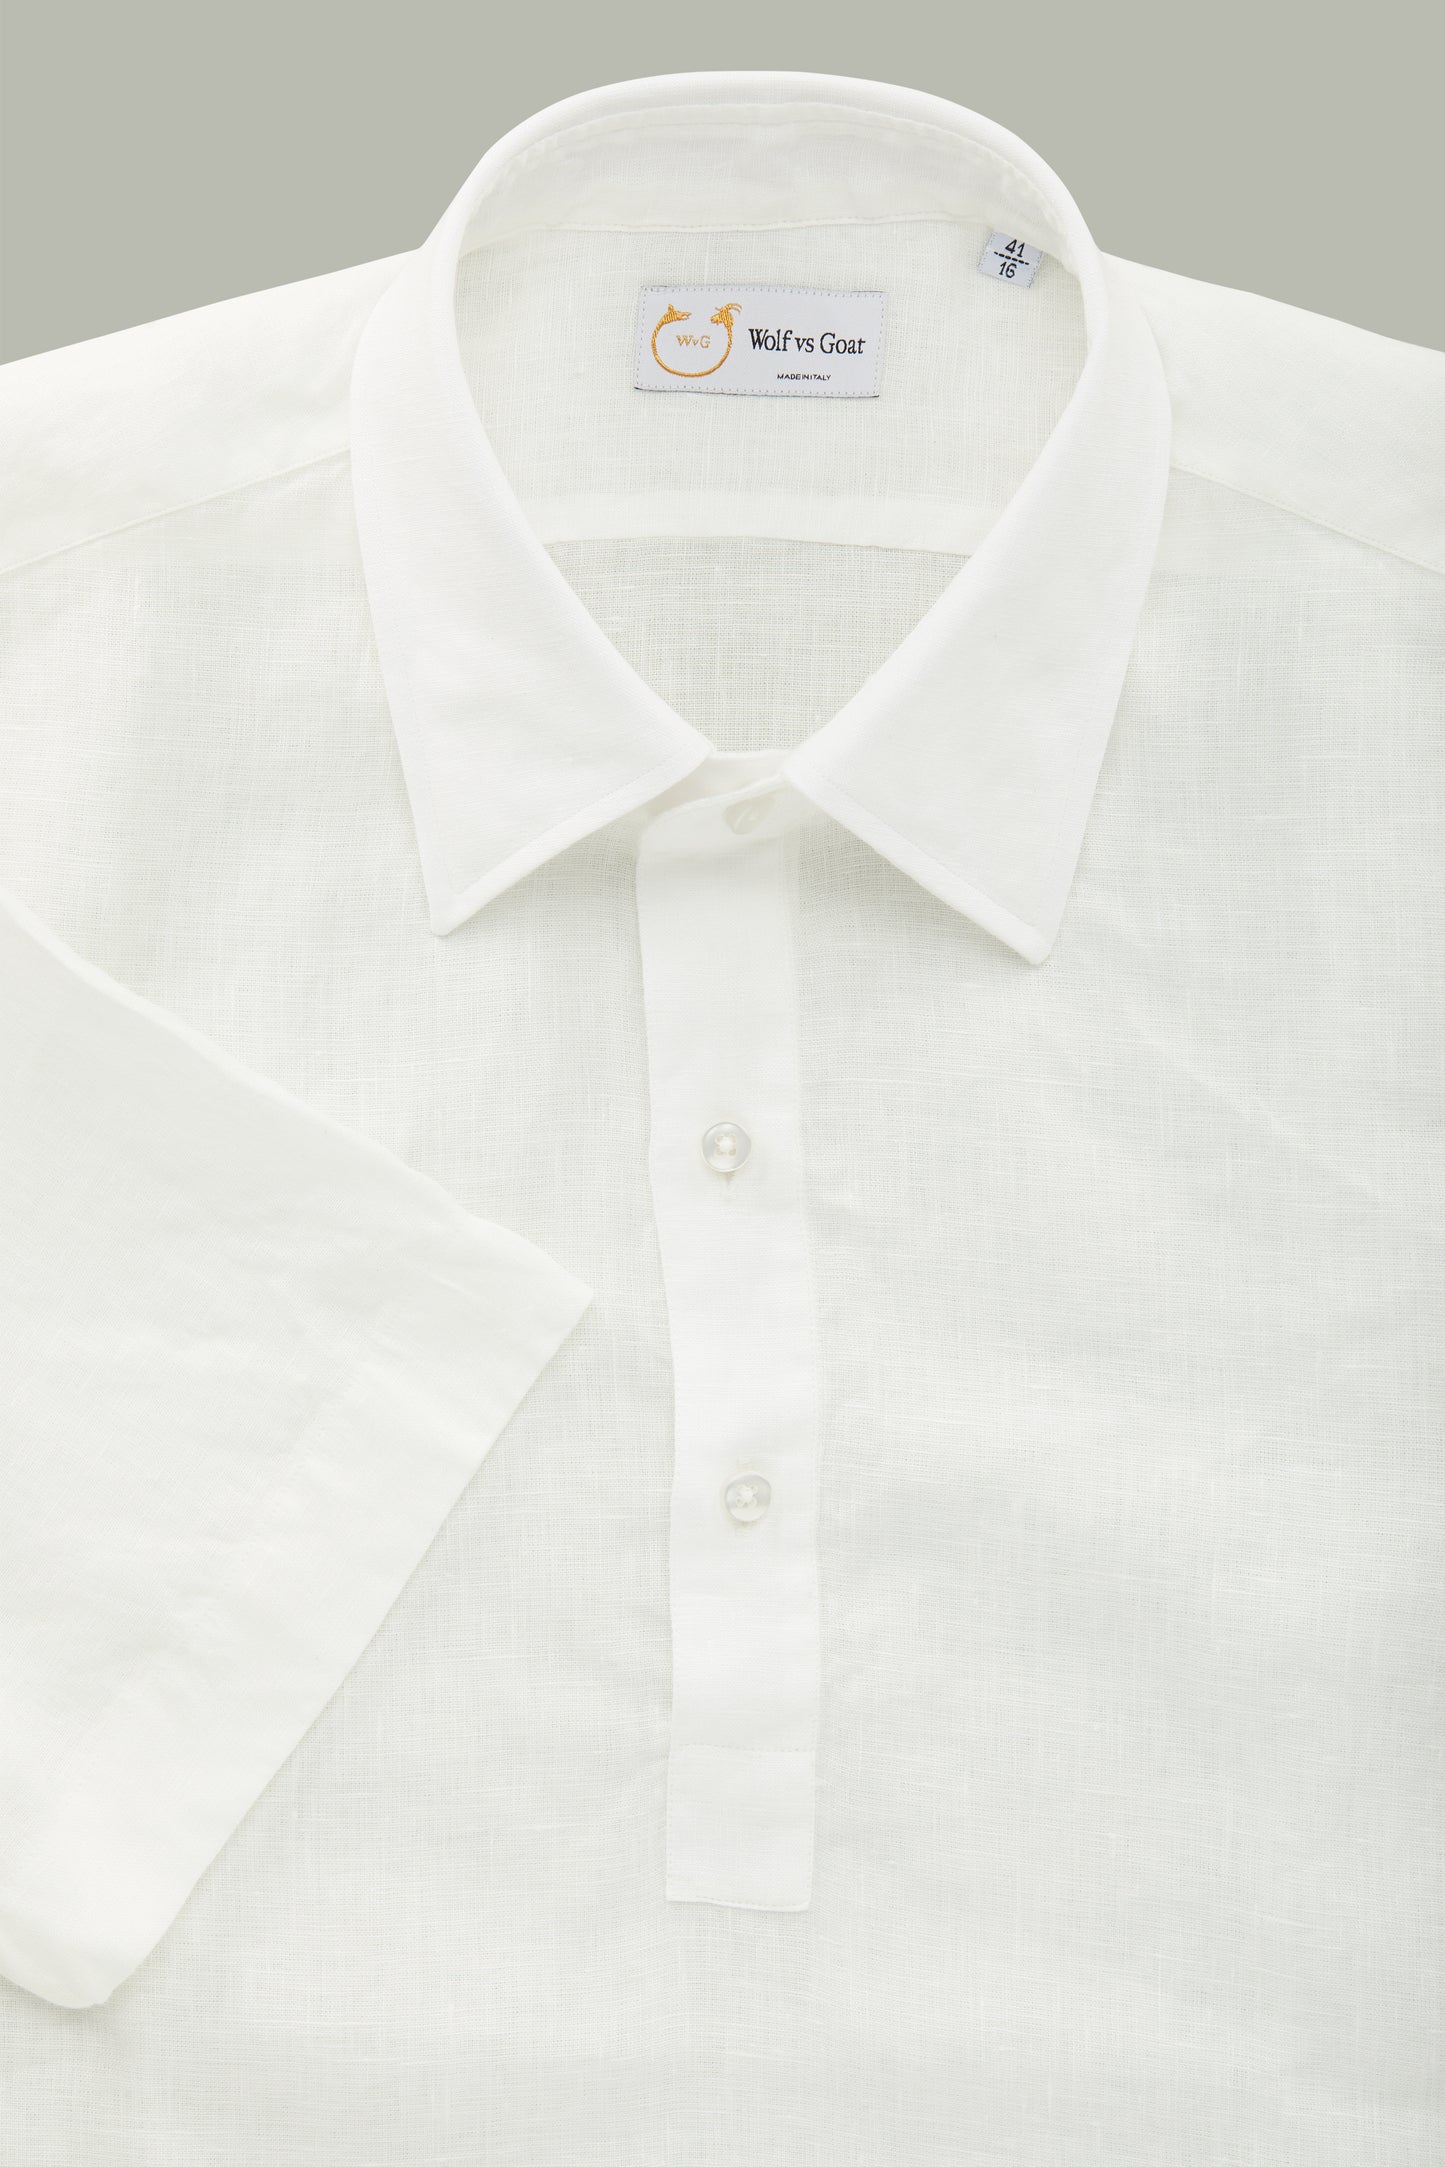 Linen Short Sleeve Pop-Over White